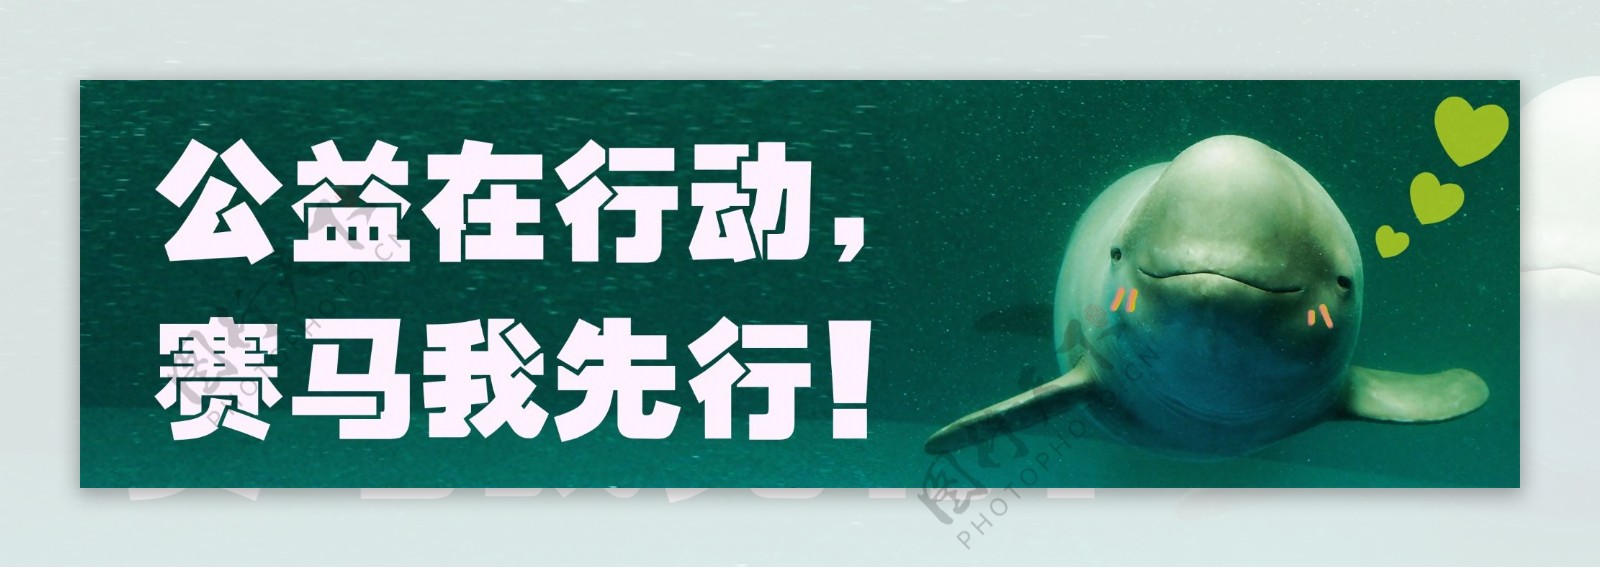 保护海豚公益海报图片